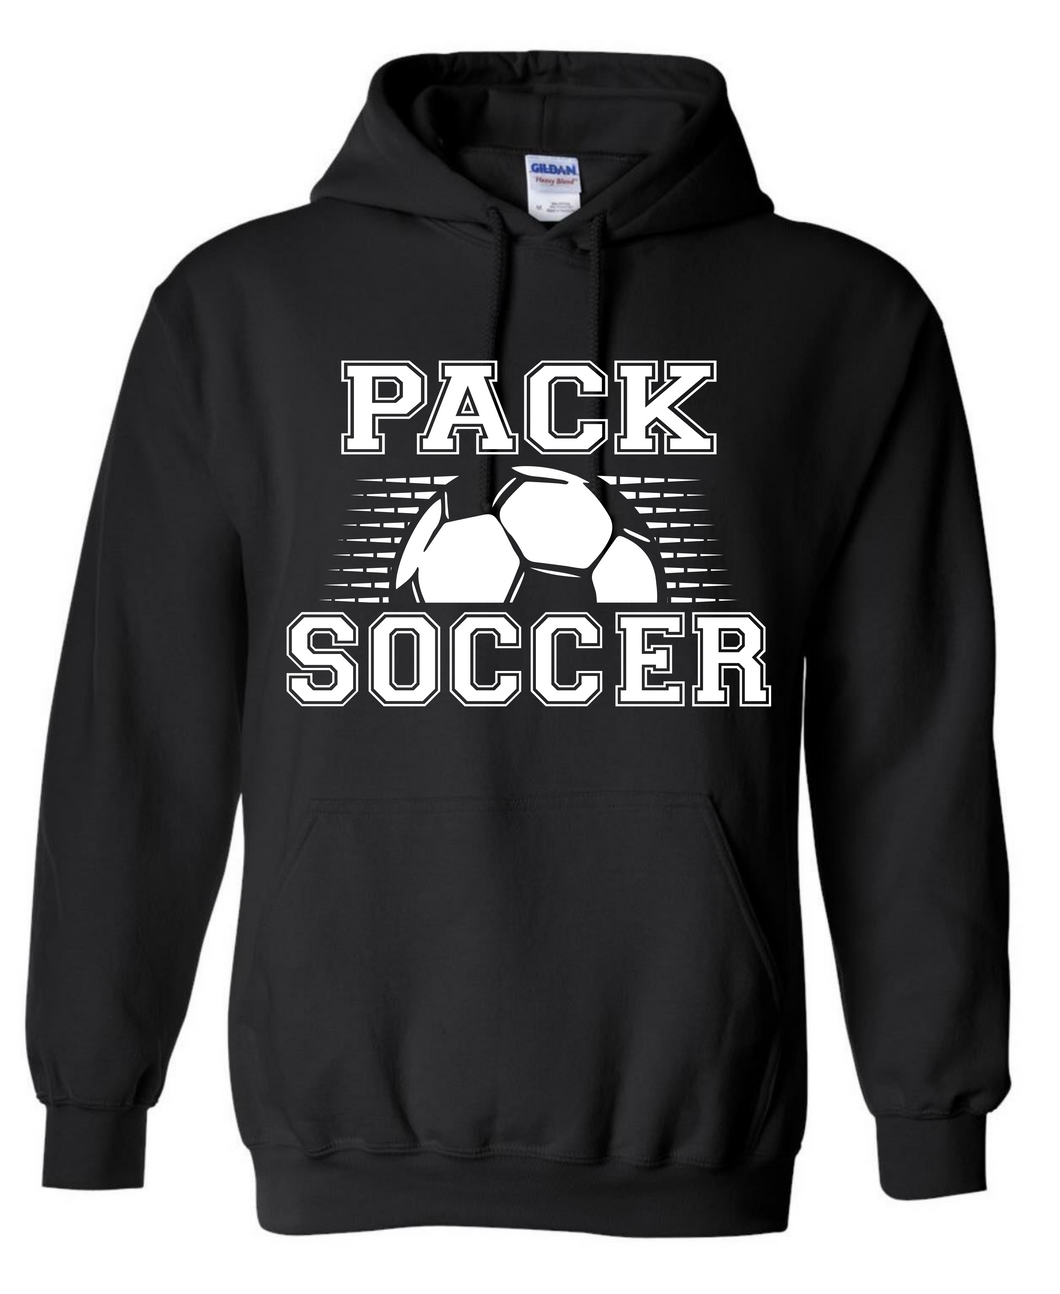 Pack Soccer Hoodie